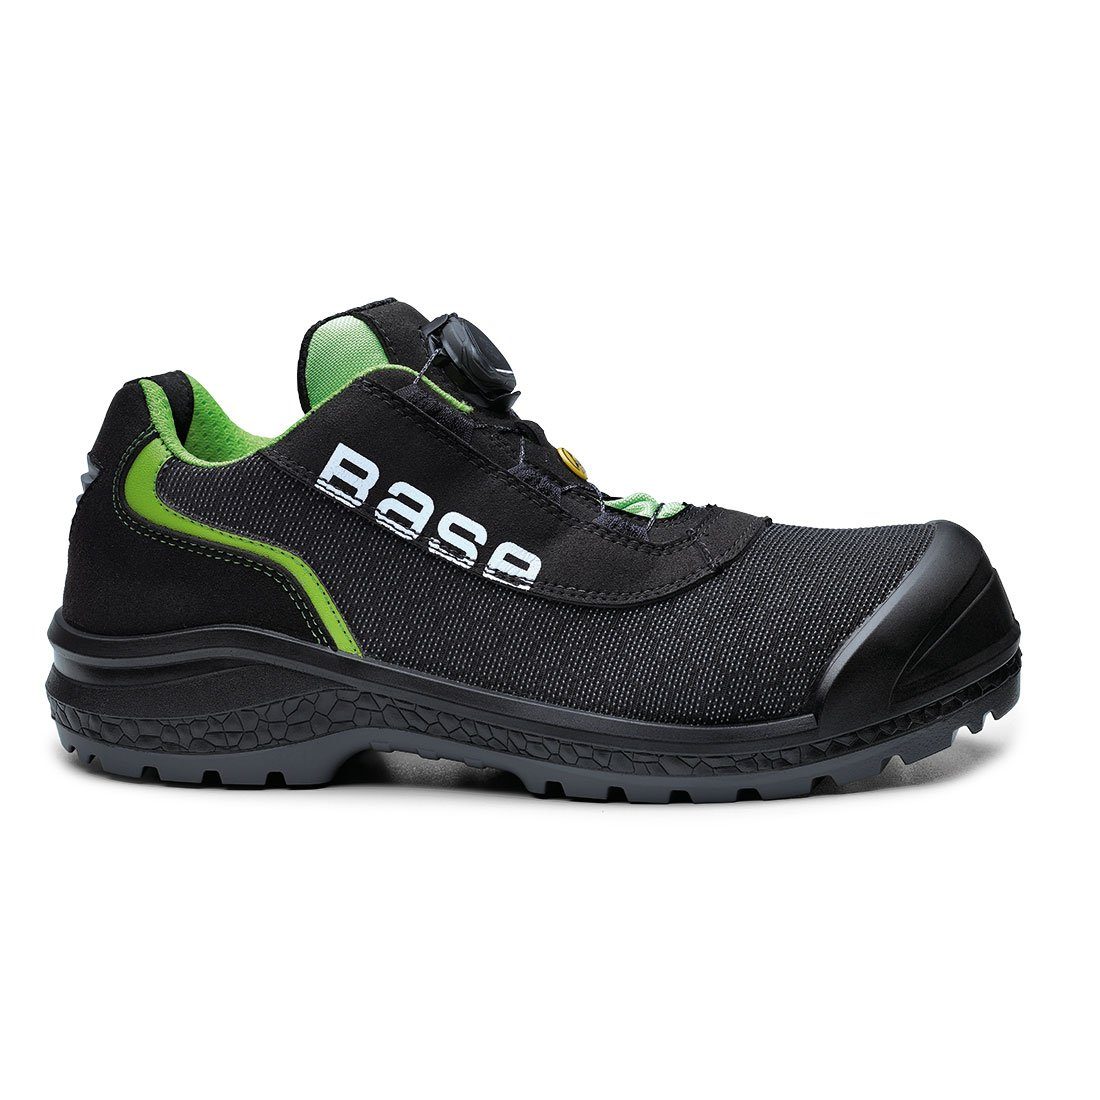 Base Footwear Sicherheitsschuhe B0822 S1P ESD mit Schutzkappe Sicherheitsschuh 100 % metallfrei, Schutzkappe 200 Joule, Durchtrittsicher